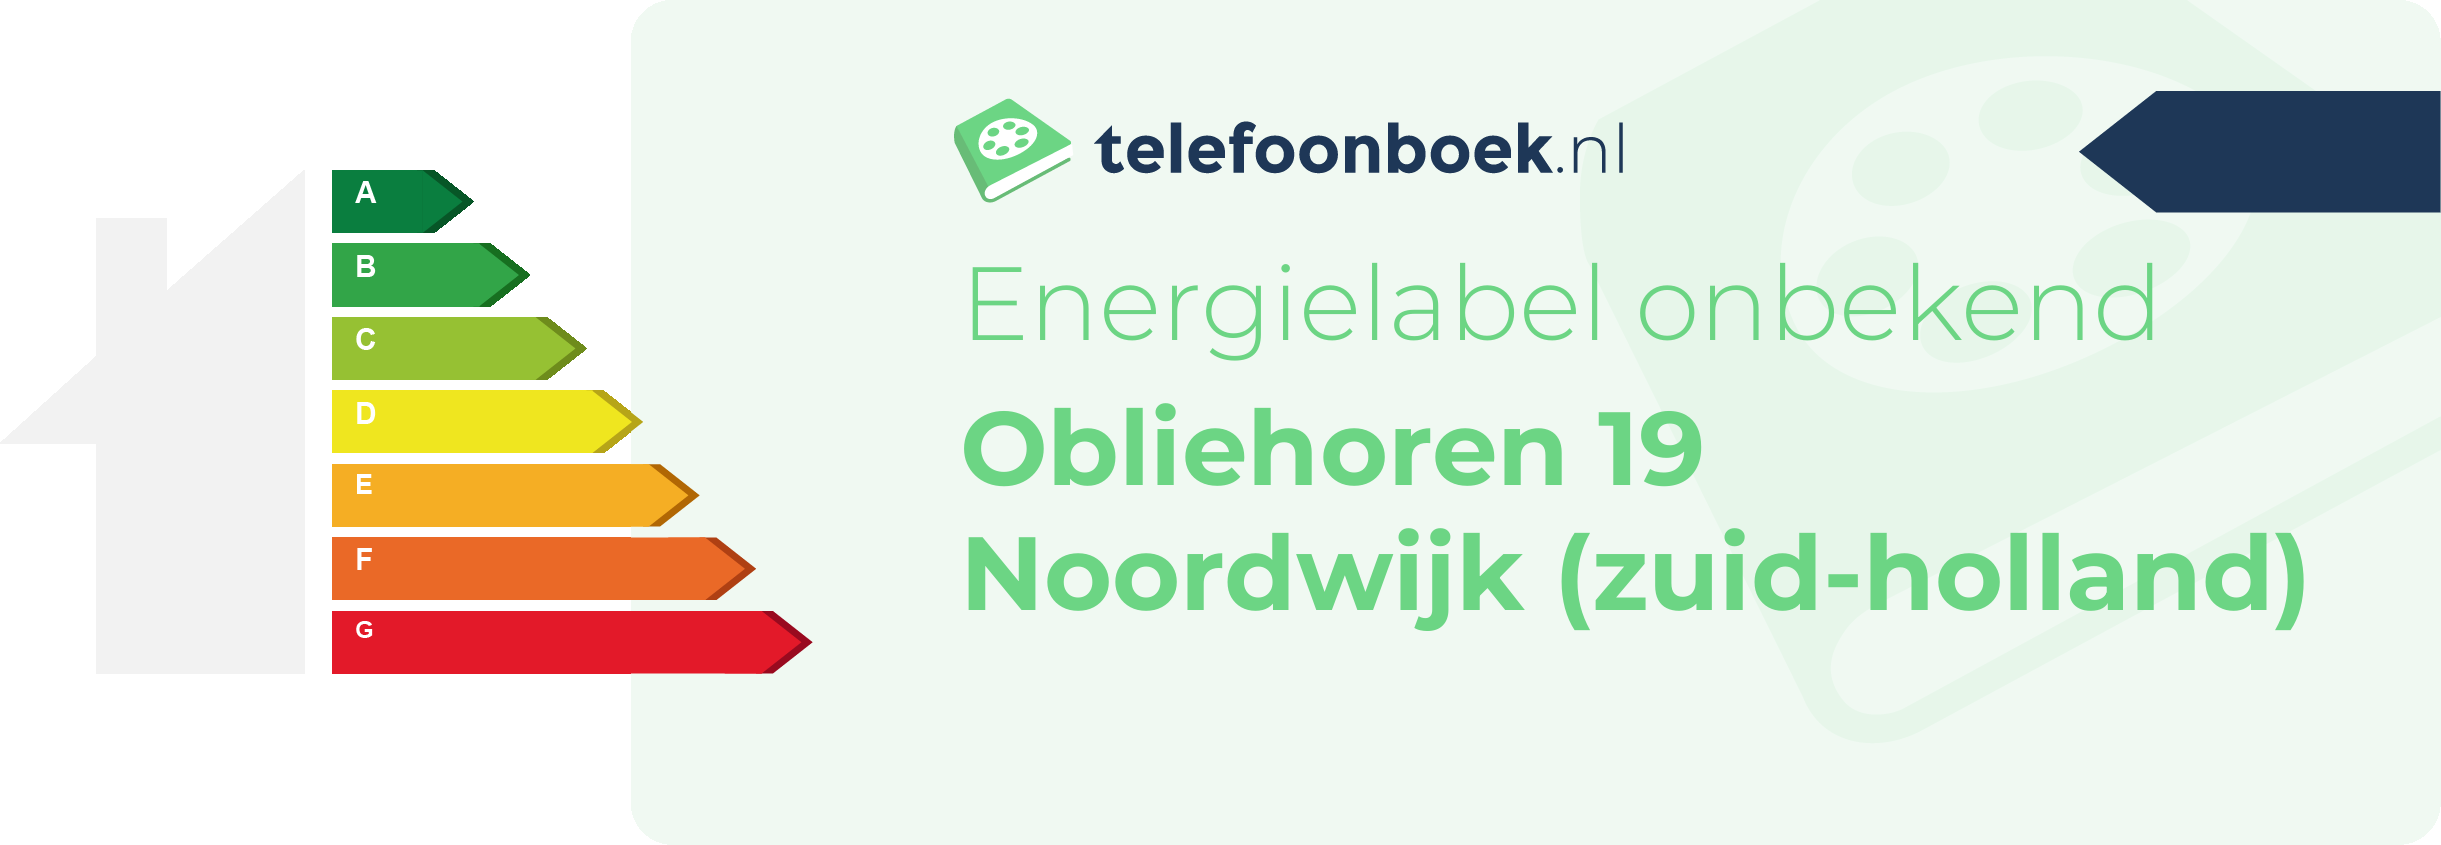 Energielabel Obliehoren 19 Noordwijk (Zuid-Holland)